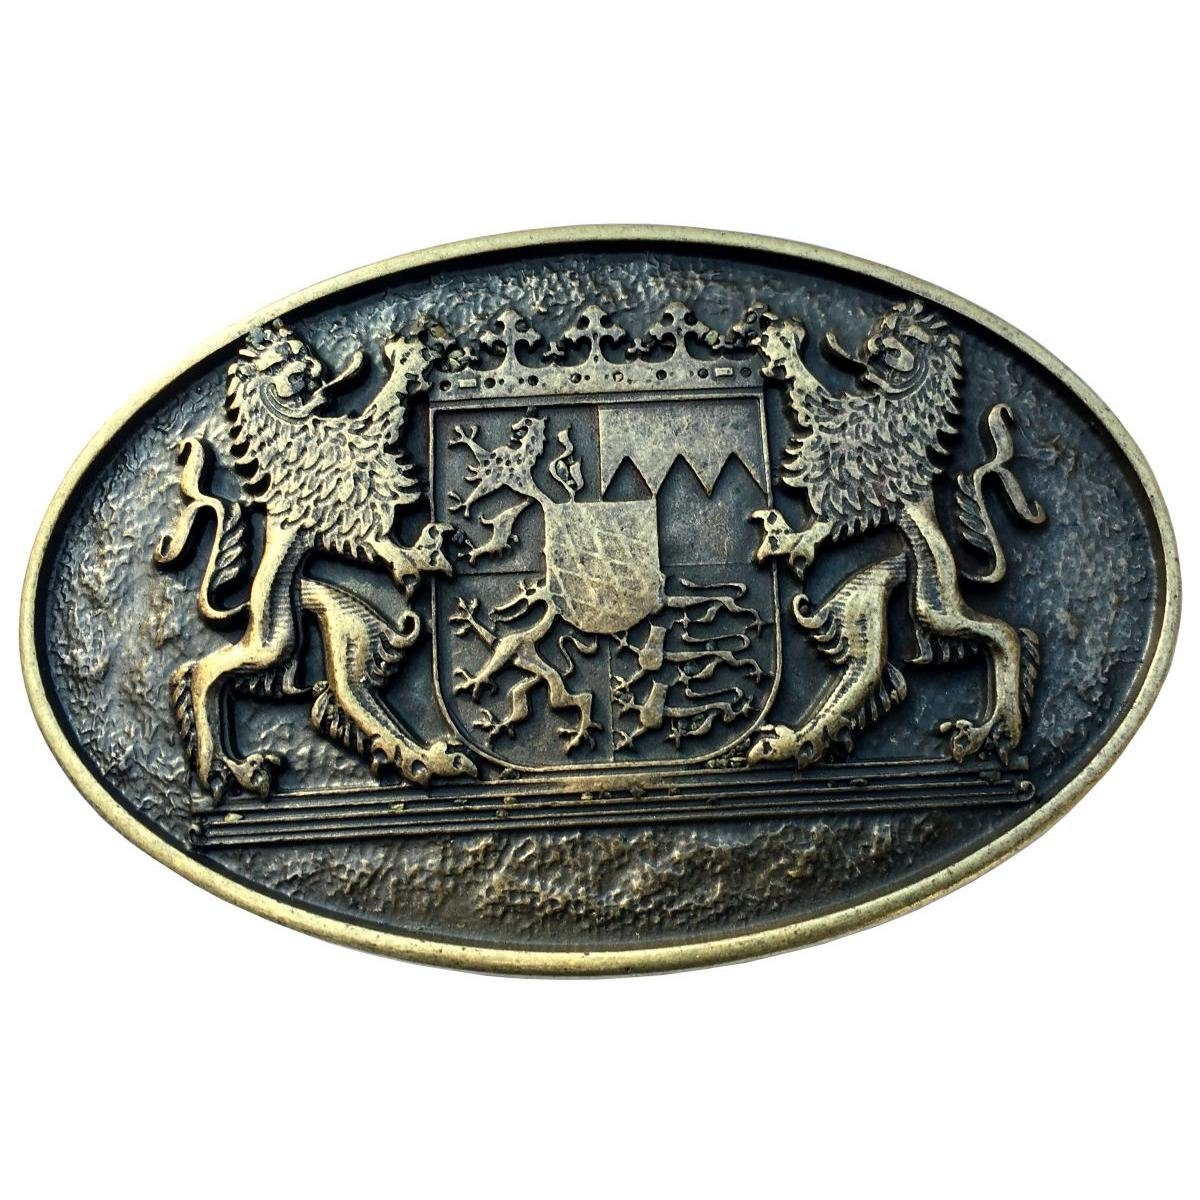 BELTINGER Gürtelschnalle Doppellöwe mit Wappen 4,0 cm - Buckle Wechselschließe Gürtelschließe 4 Altmessing